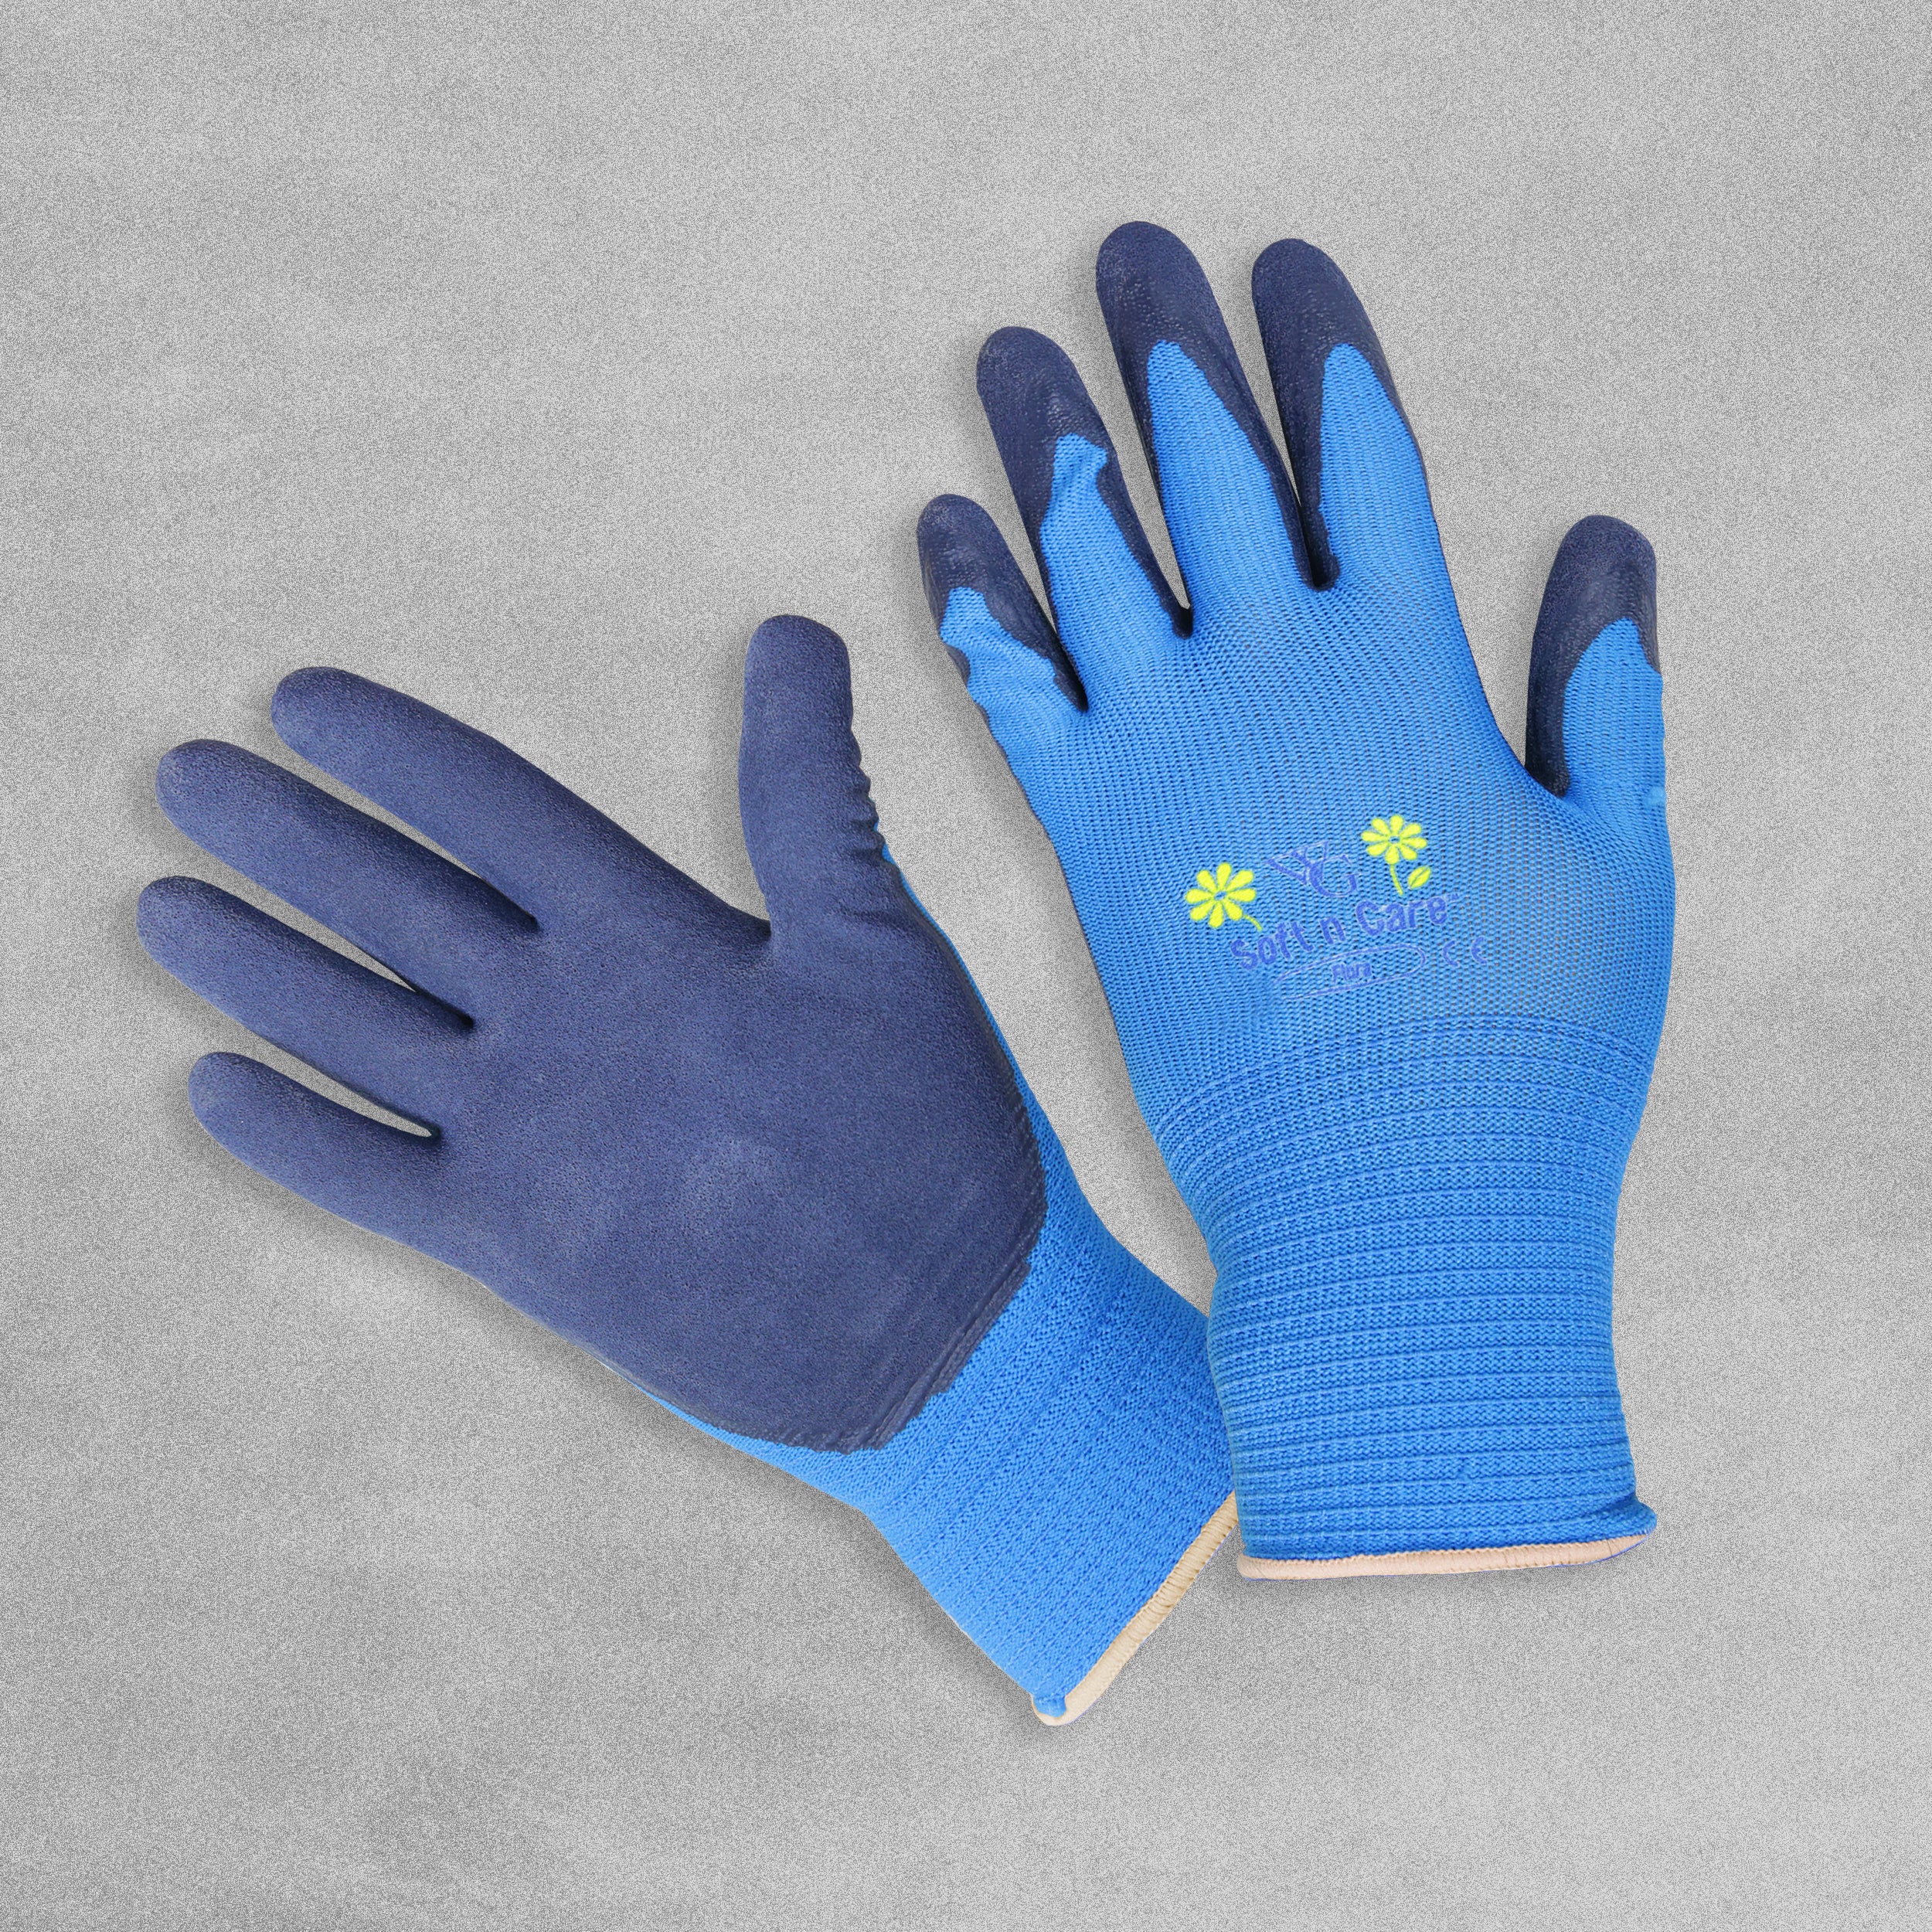 Soft n Care Garden gloves - bright blue